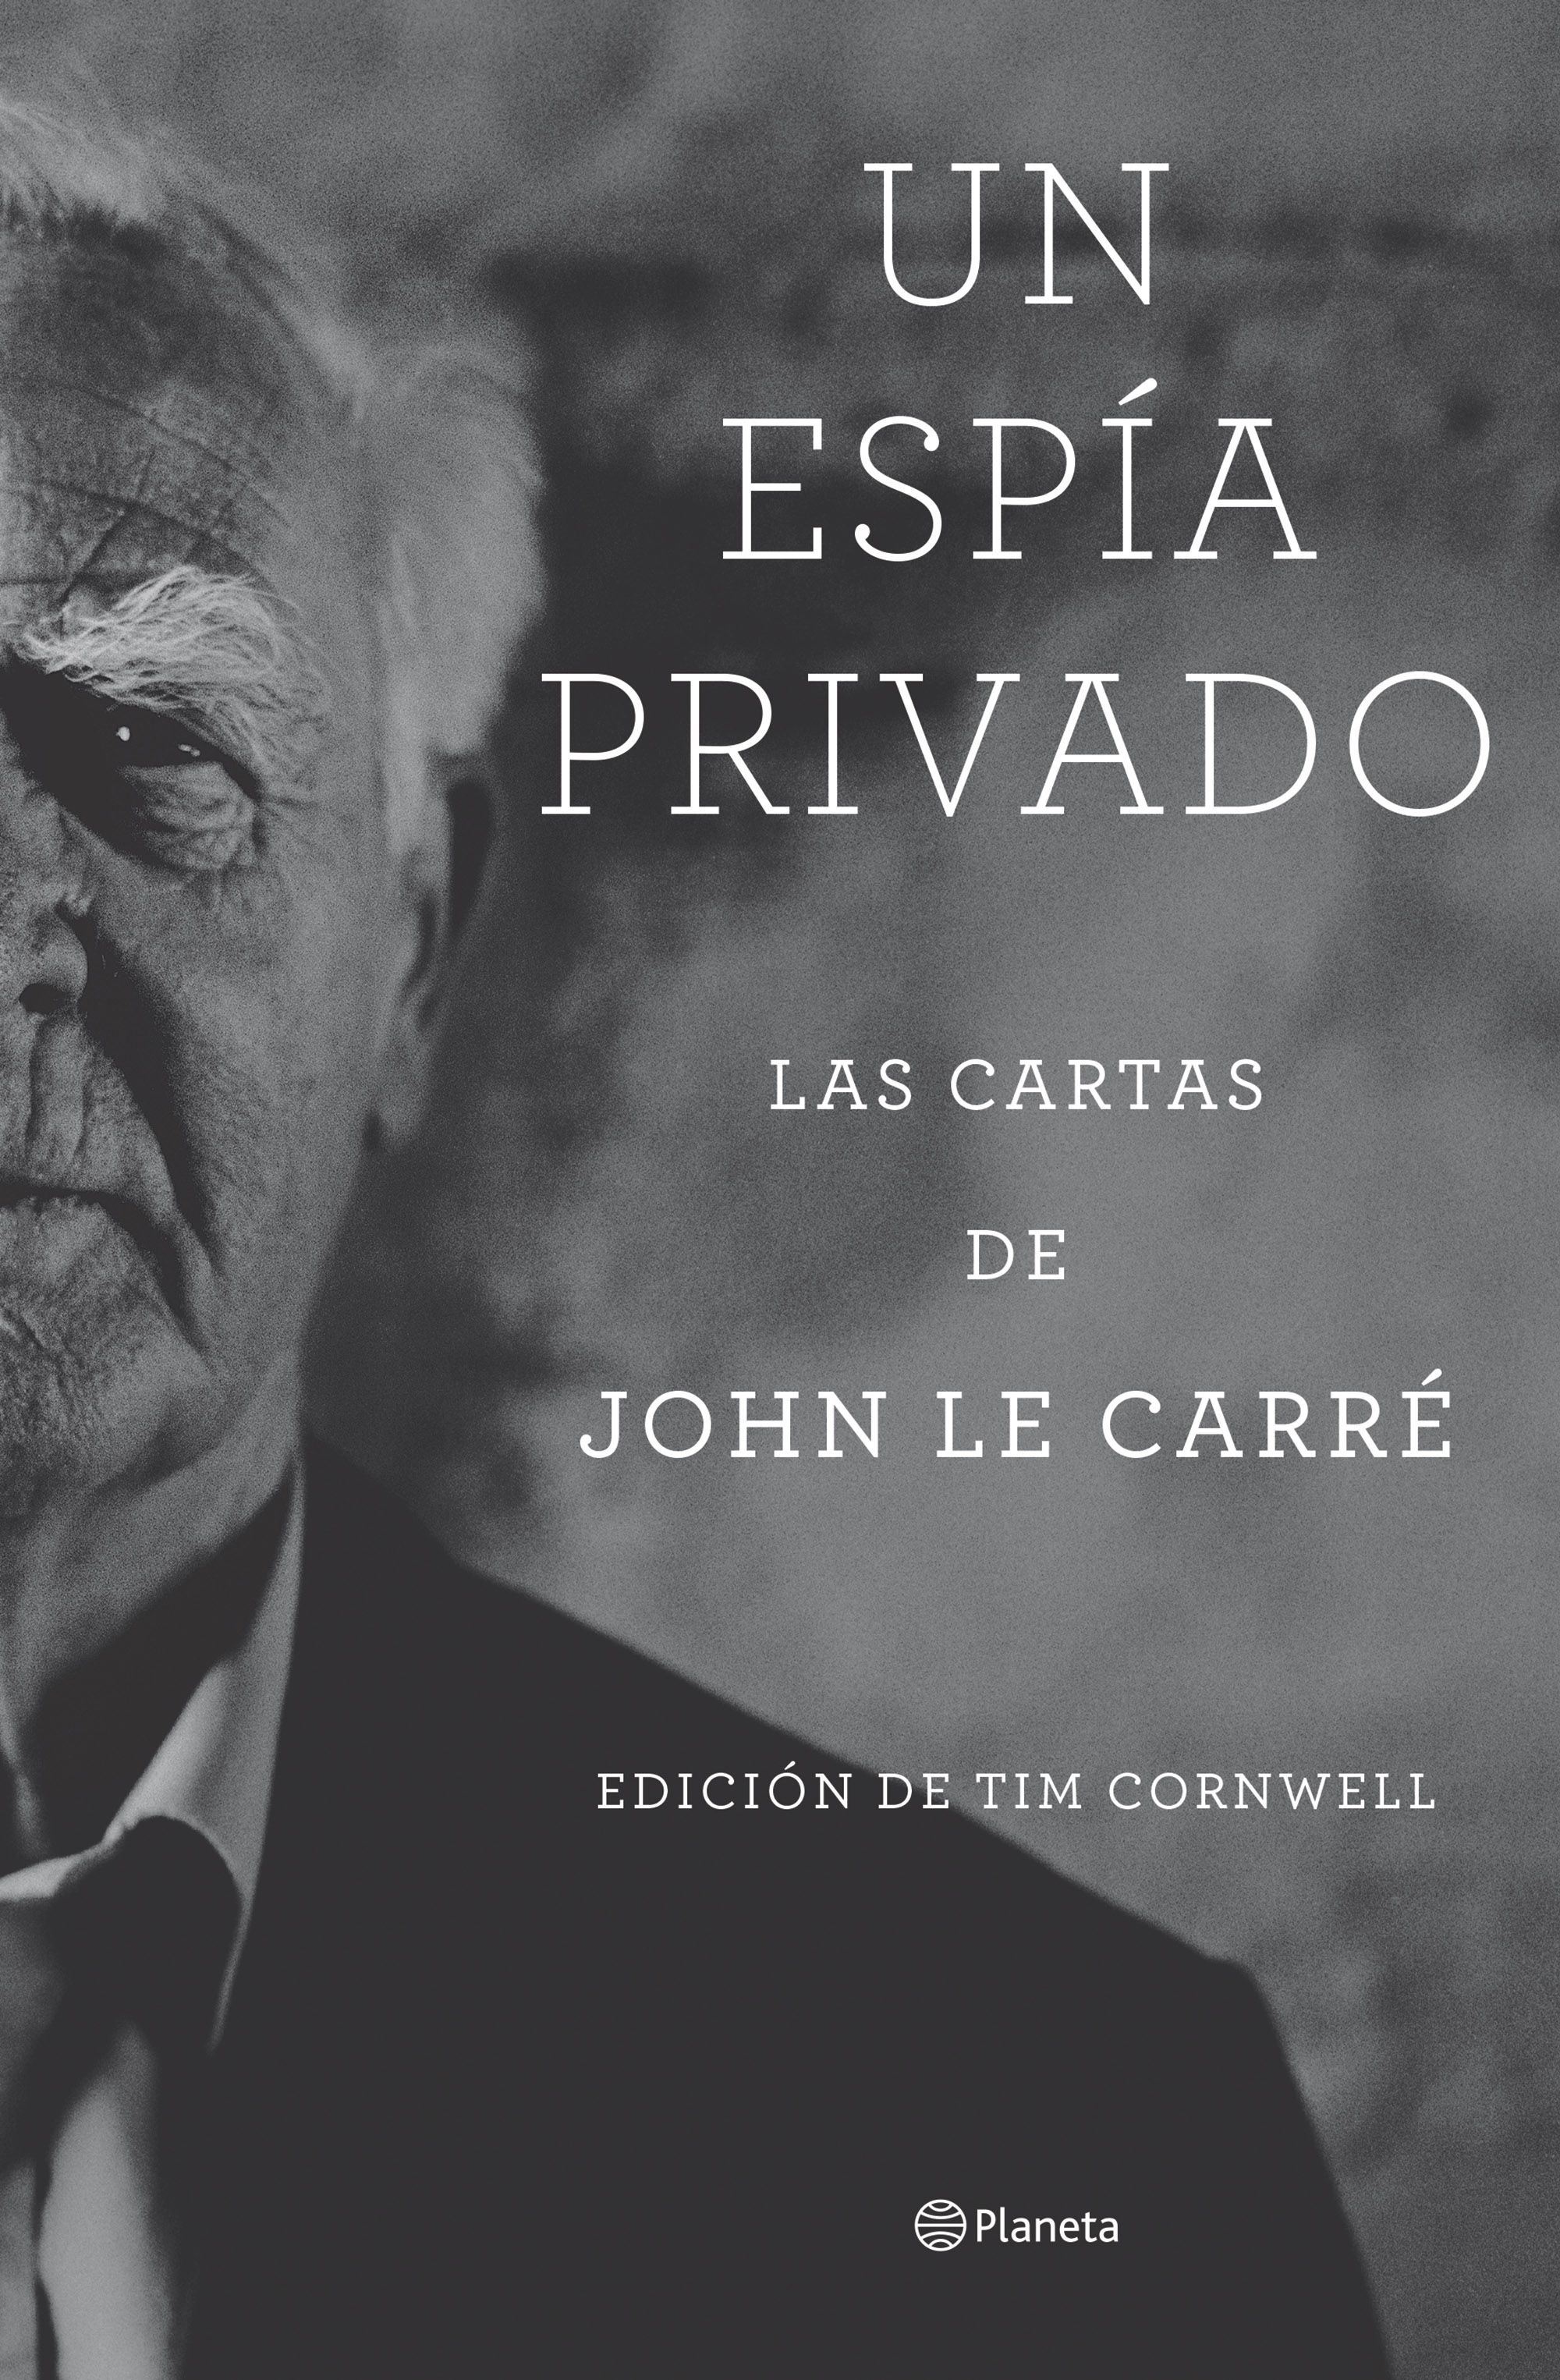 Espía privado, Un "Las cartas de John le Carré". 